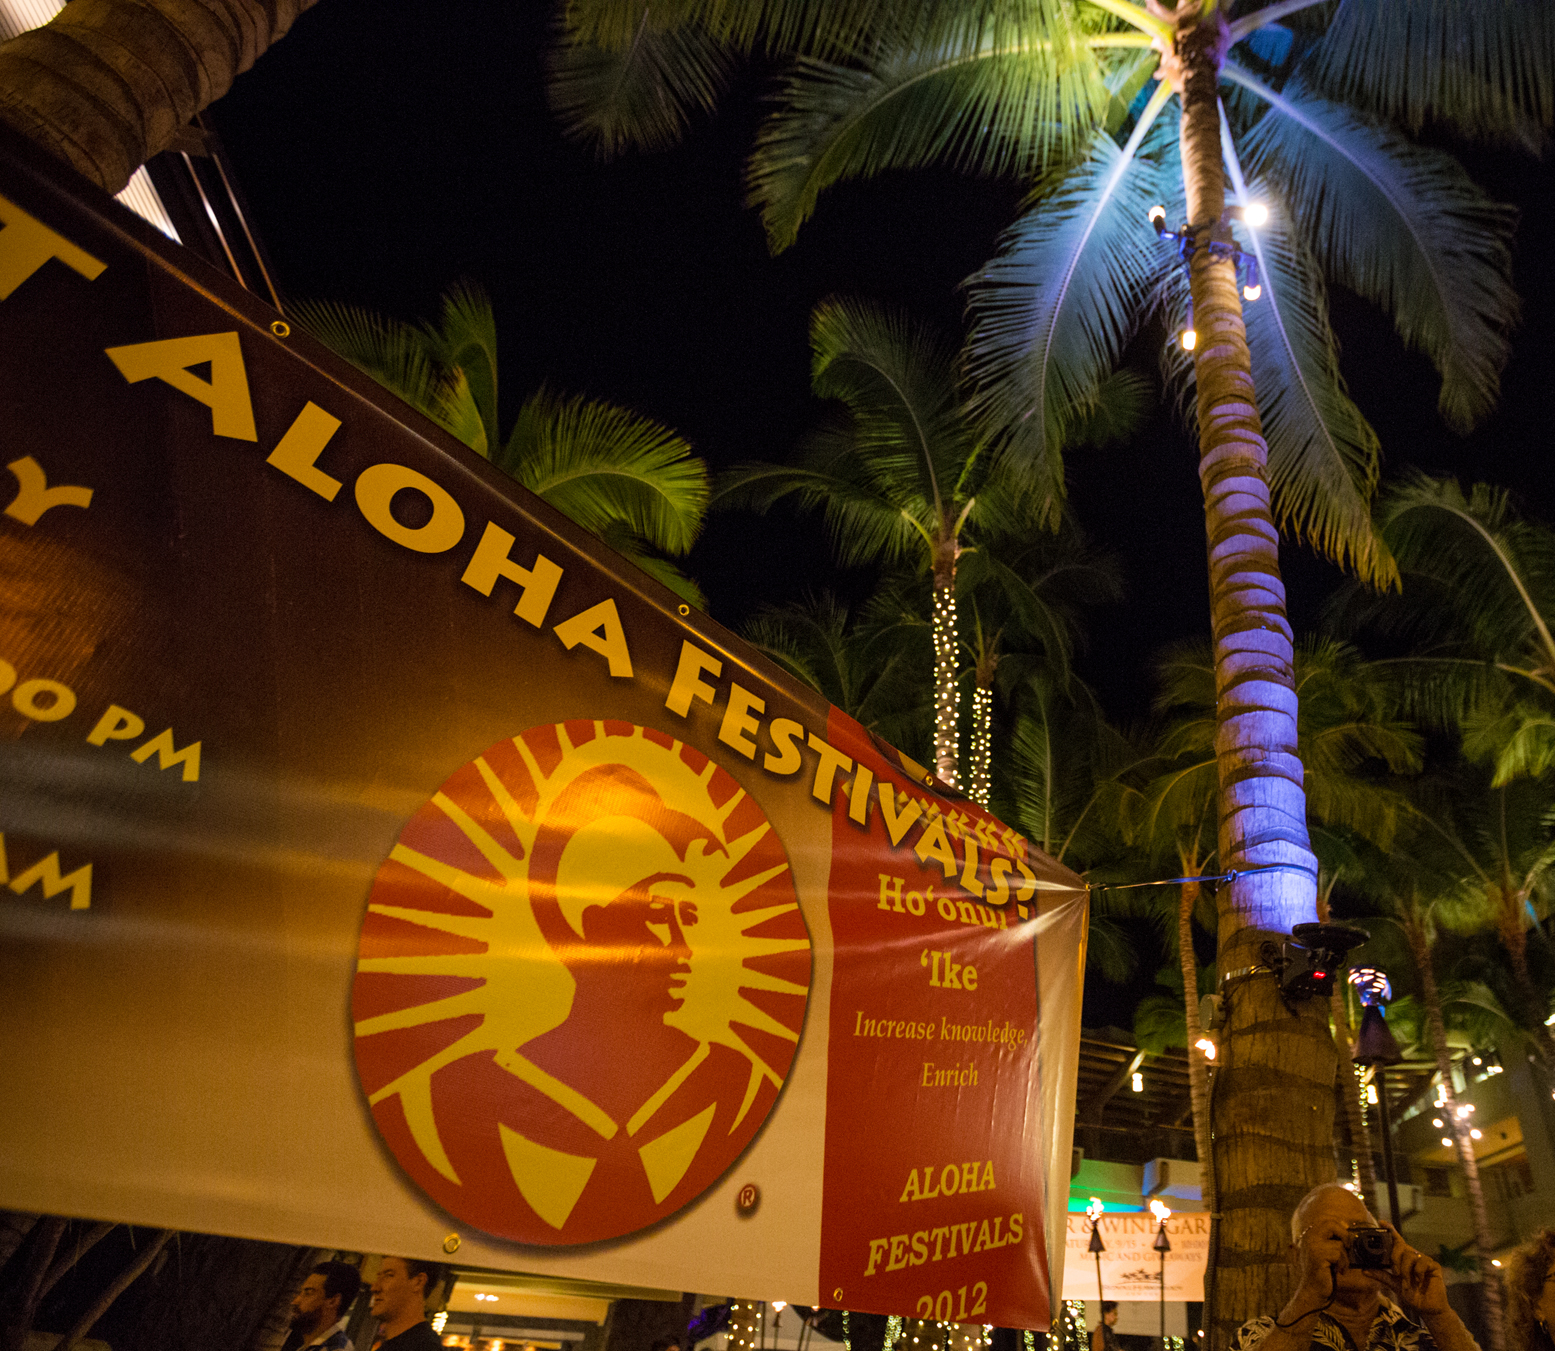 アロハ・フェスティバル（Aloha Festival) Malama Hawaii【マラマハワイ】 ハワイ州レスポンシブルツーリズム情報サイト